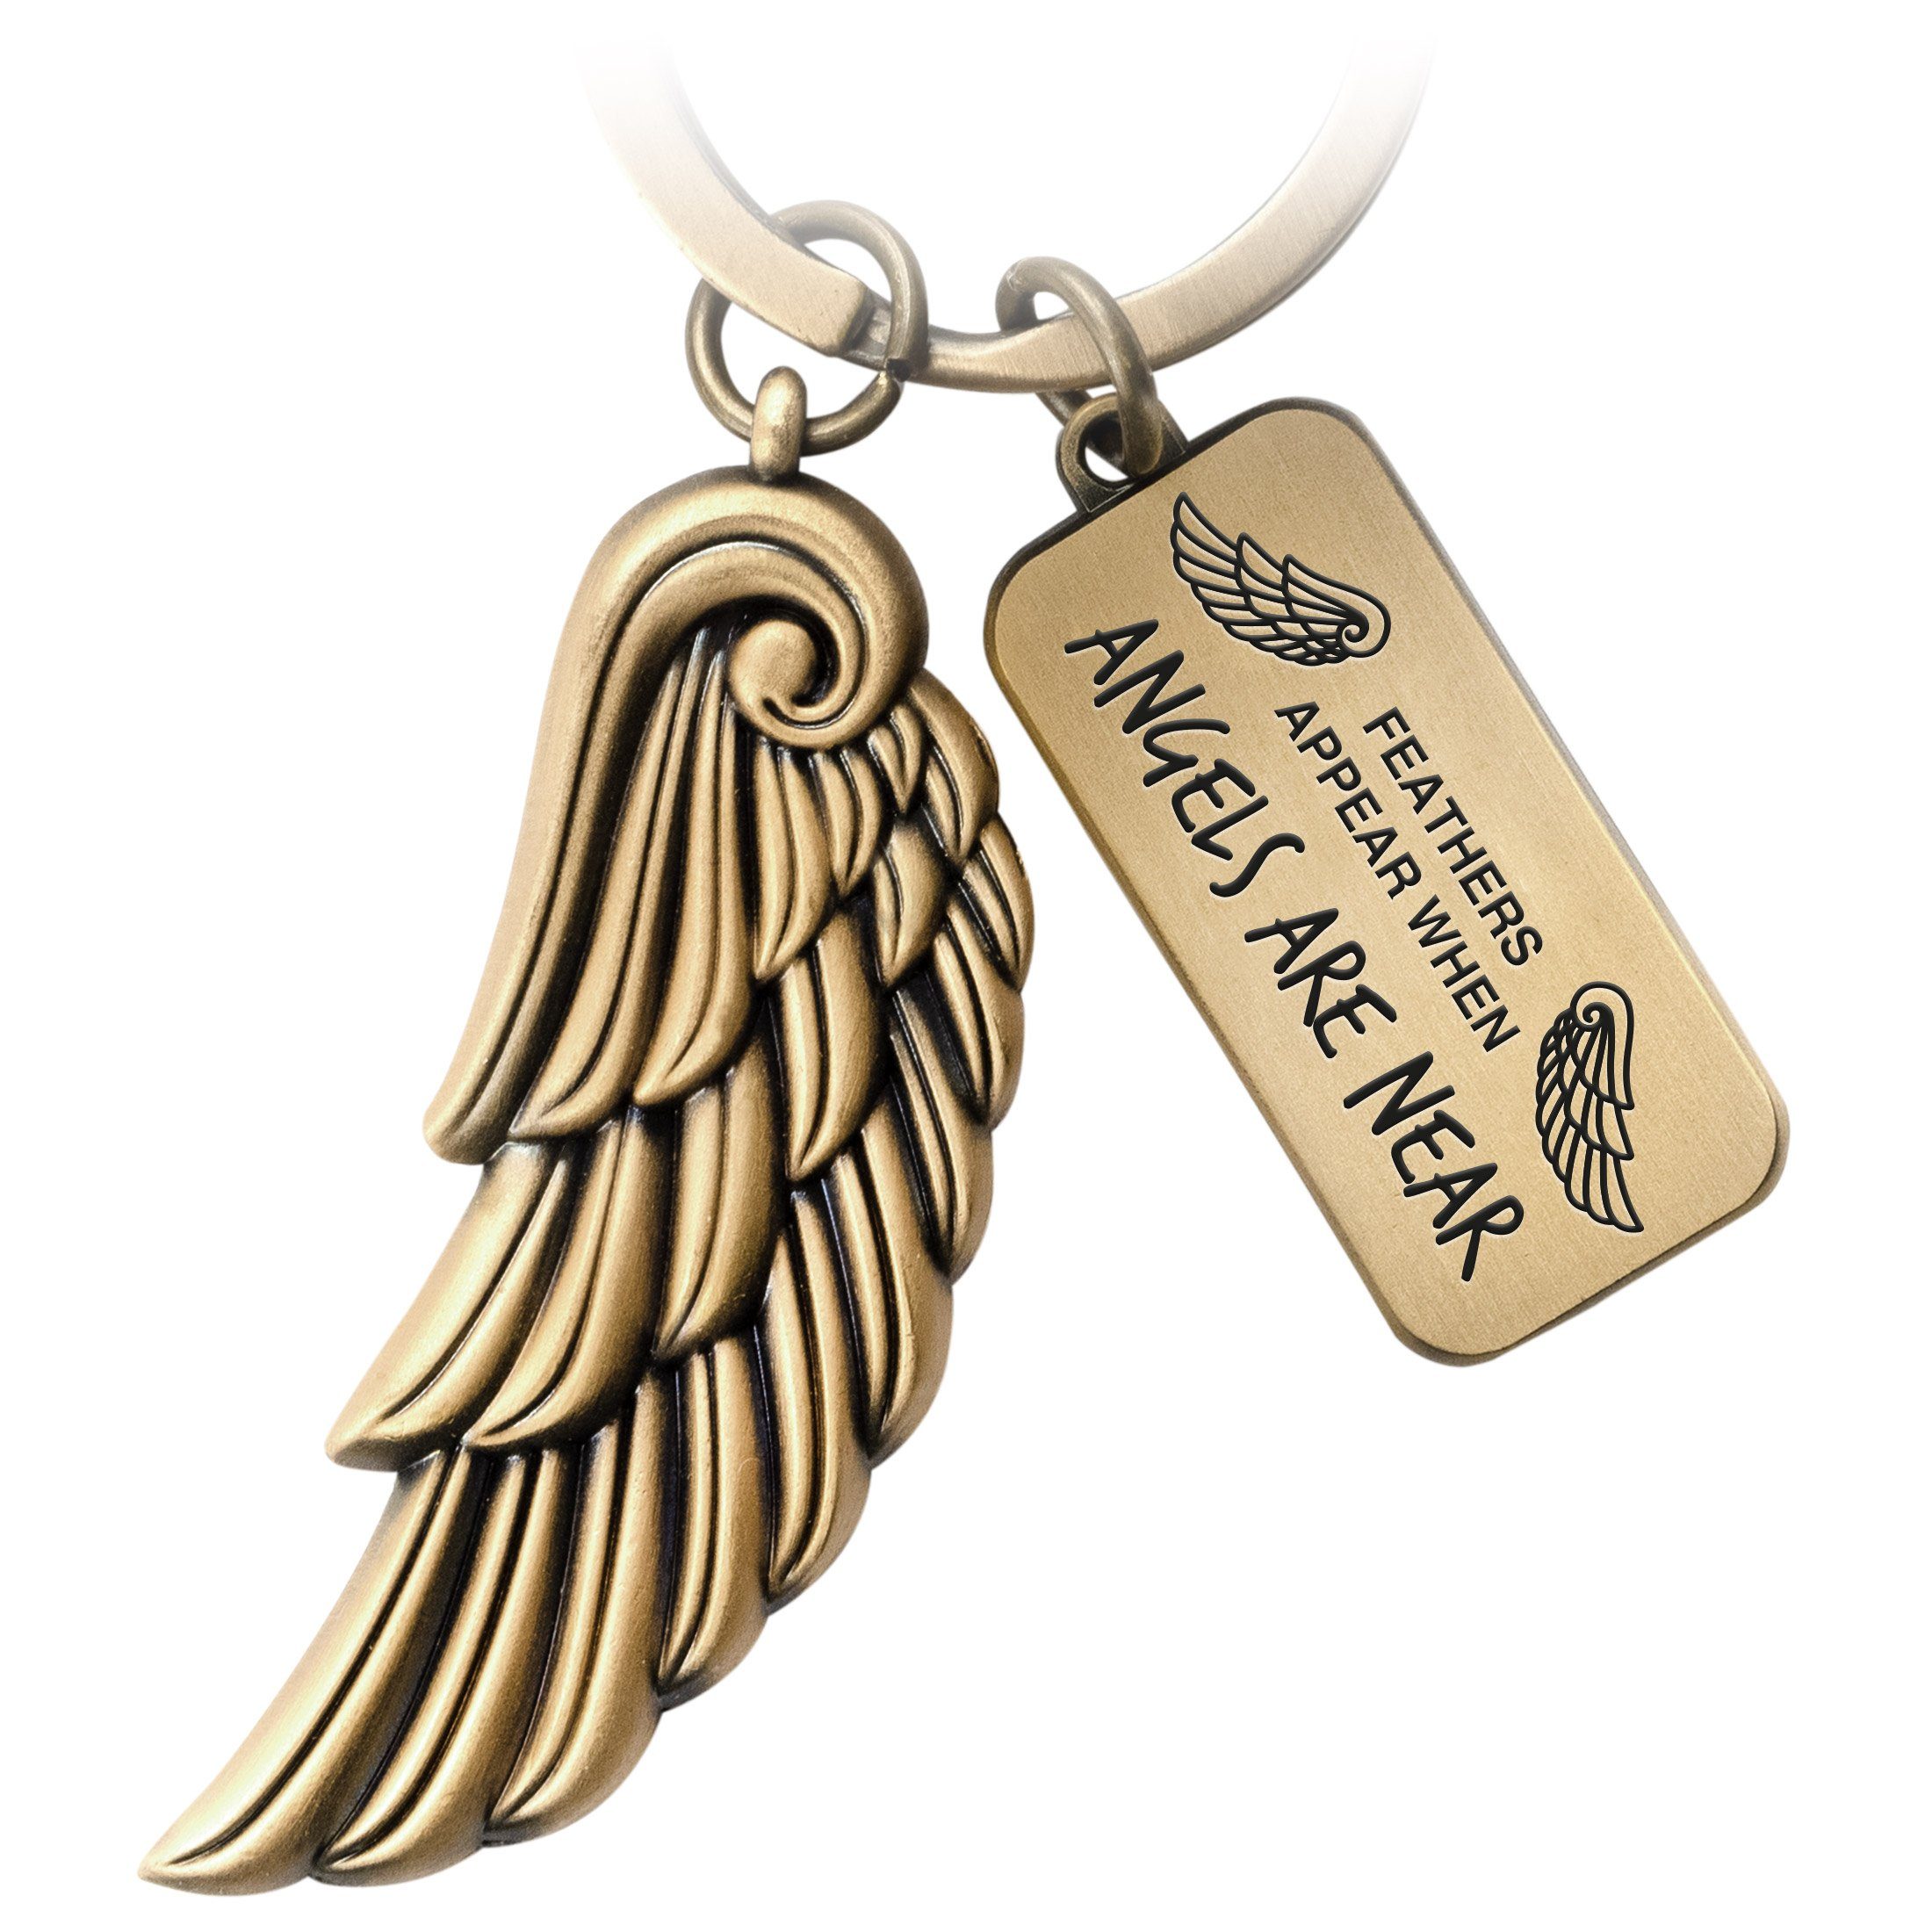 FABACH Schlüsselanhänger Engelsflügel Angel mit Gravur - Angels Are Near - Schutzengel Geschenk Antique Bronze